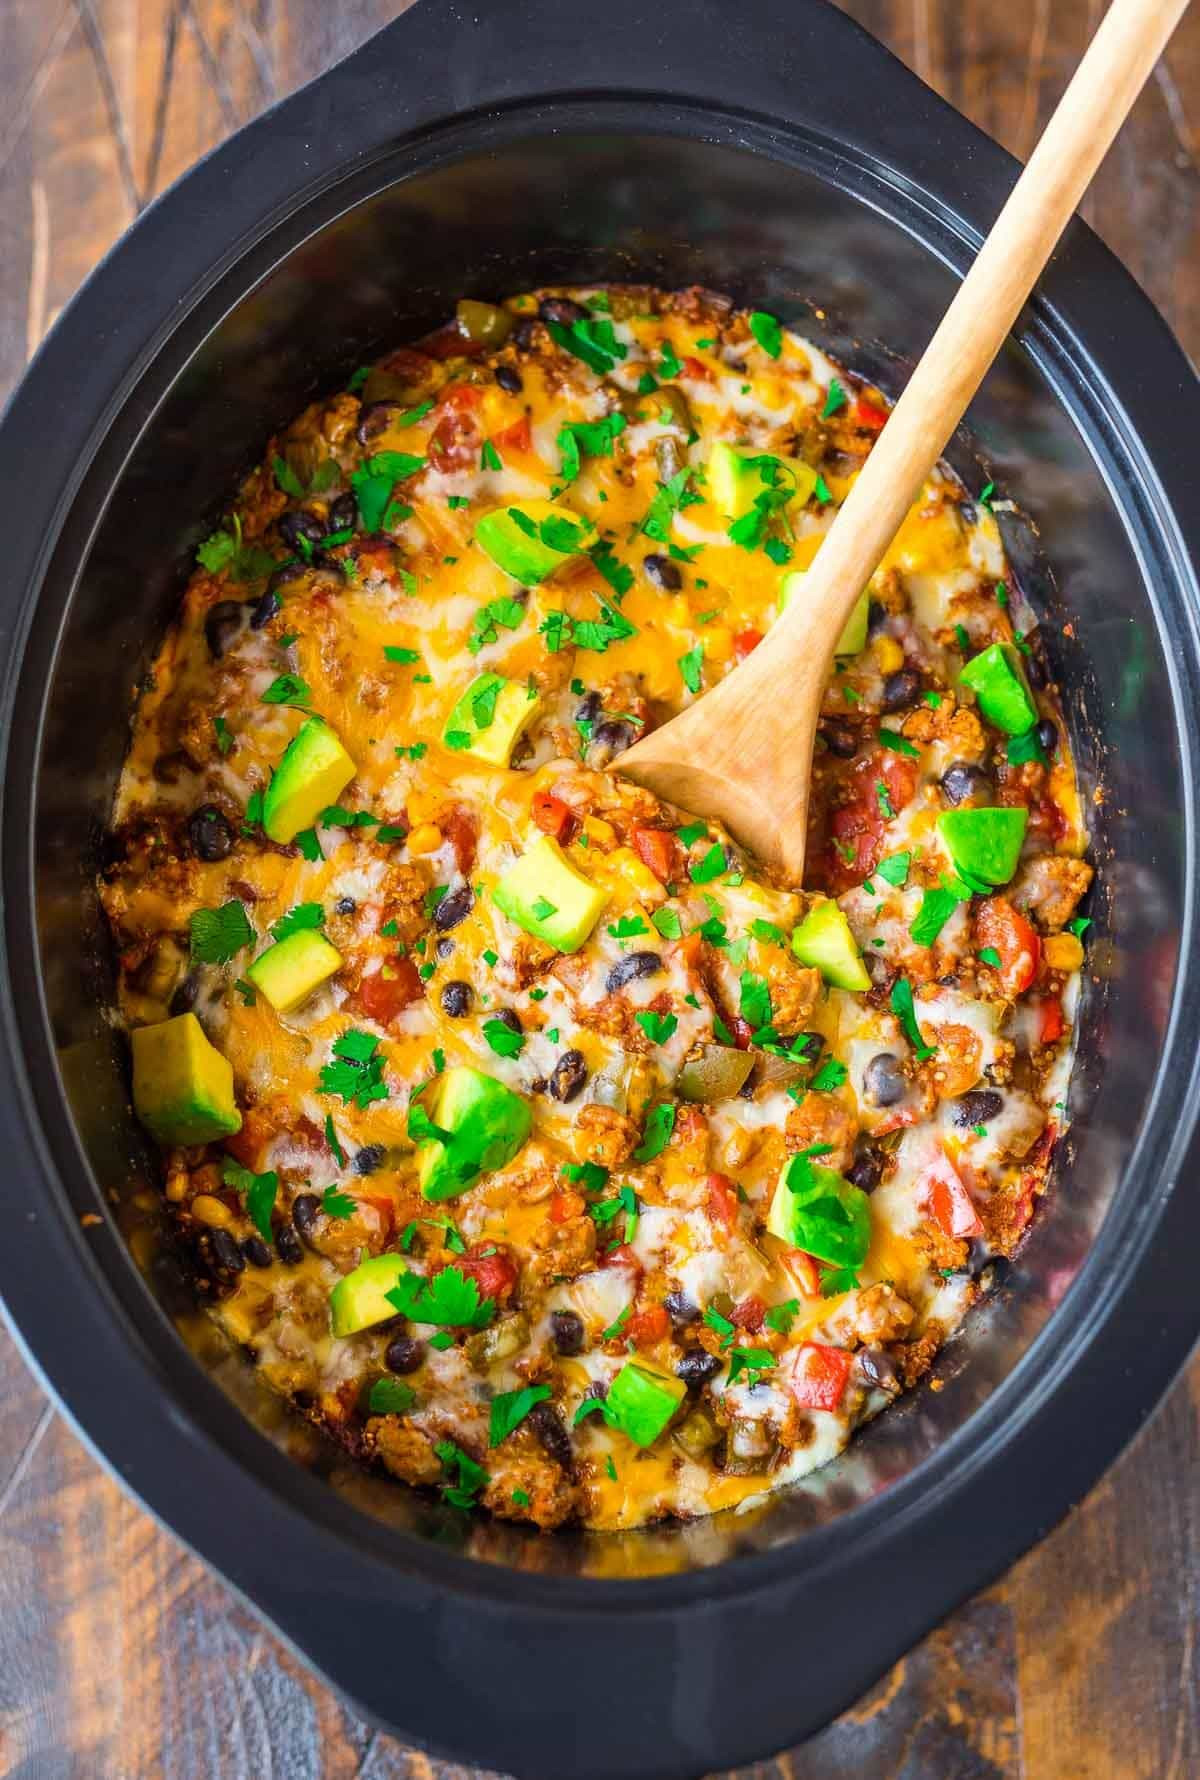 Mexican Crockpot Recipes Inspirational Crock Pot Mexican Casserole Recipe